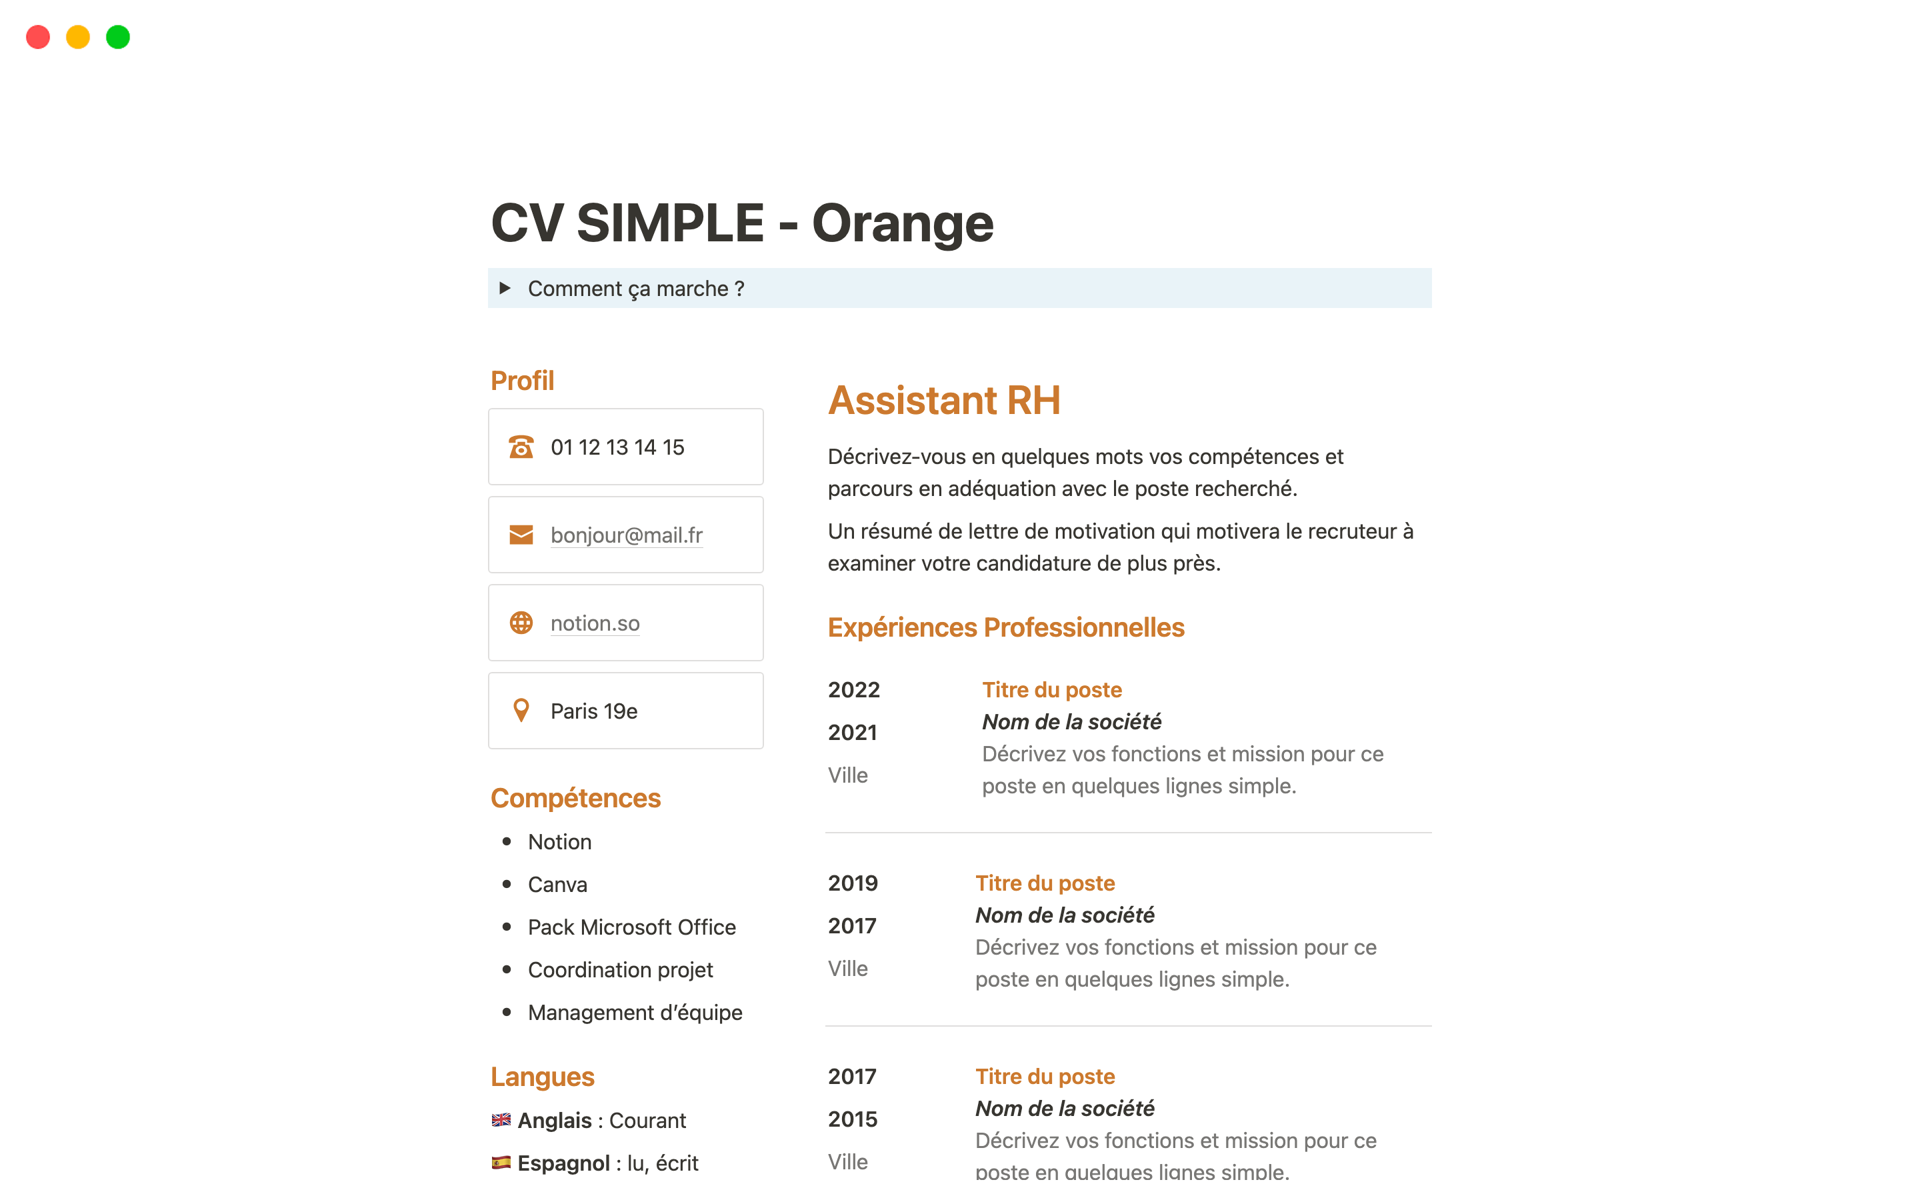 Uma prévia do modelo para CV SIMPLE - Orange en Français